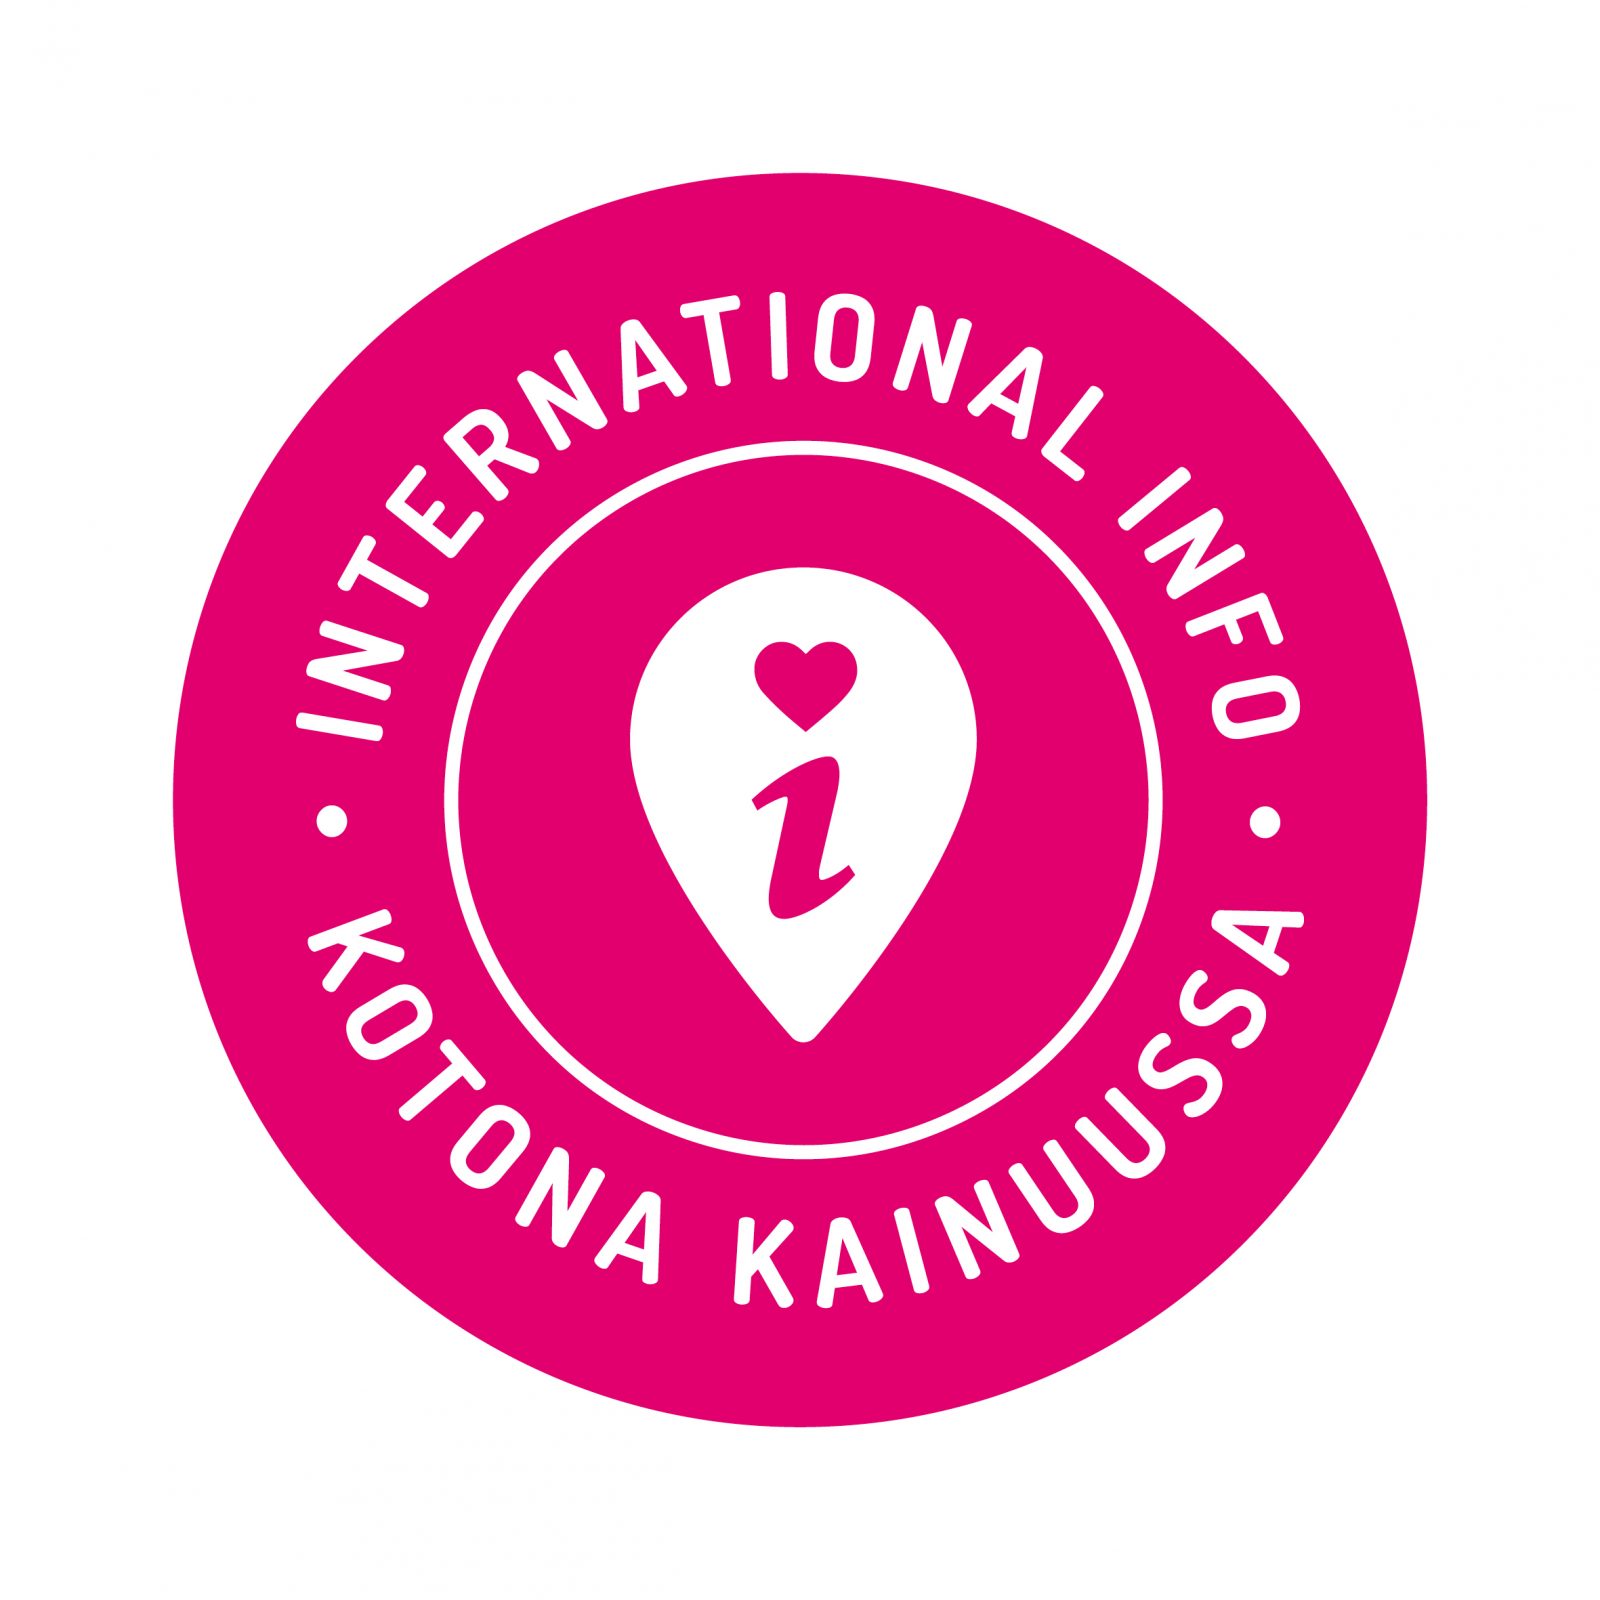 International Infon pinkki logo (teksti: Kotona Kainuussa)